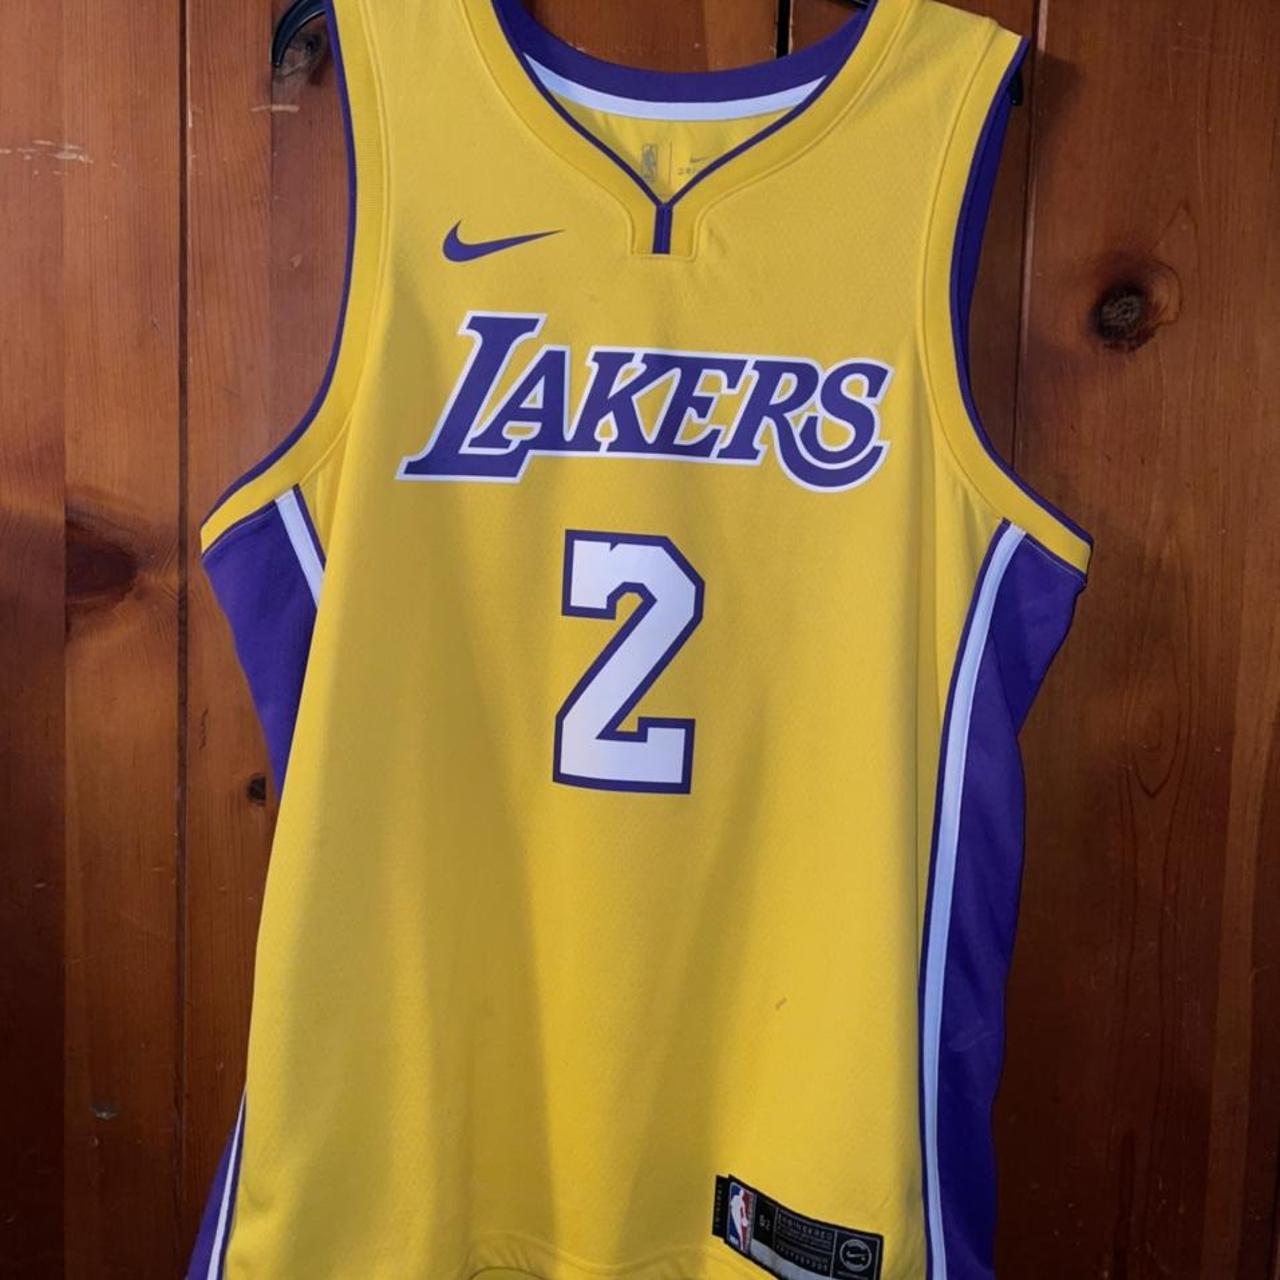 Lonzo Ball Lakers jersey